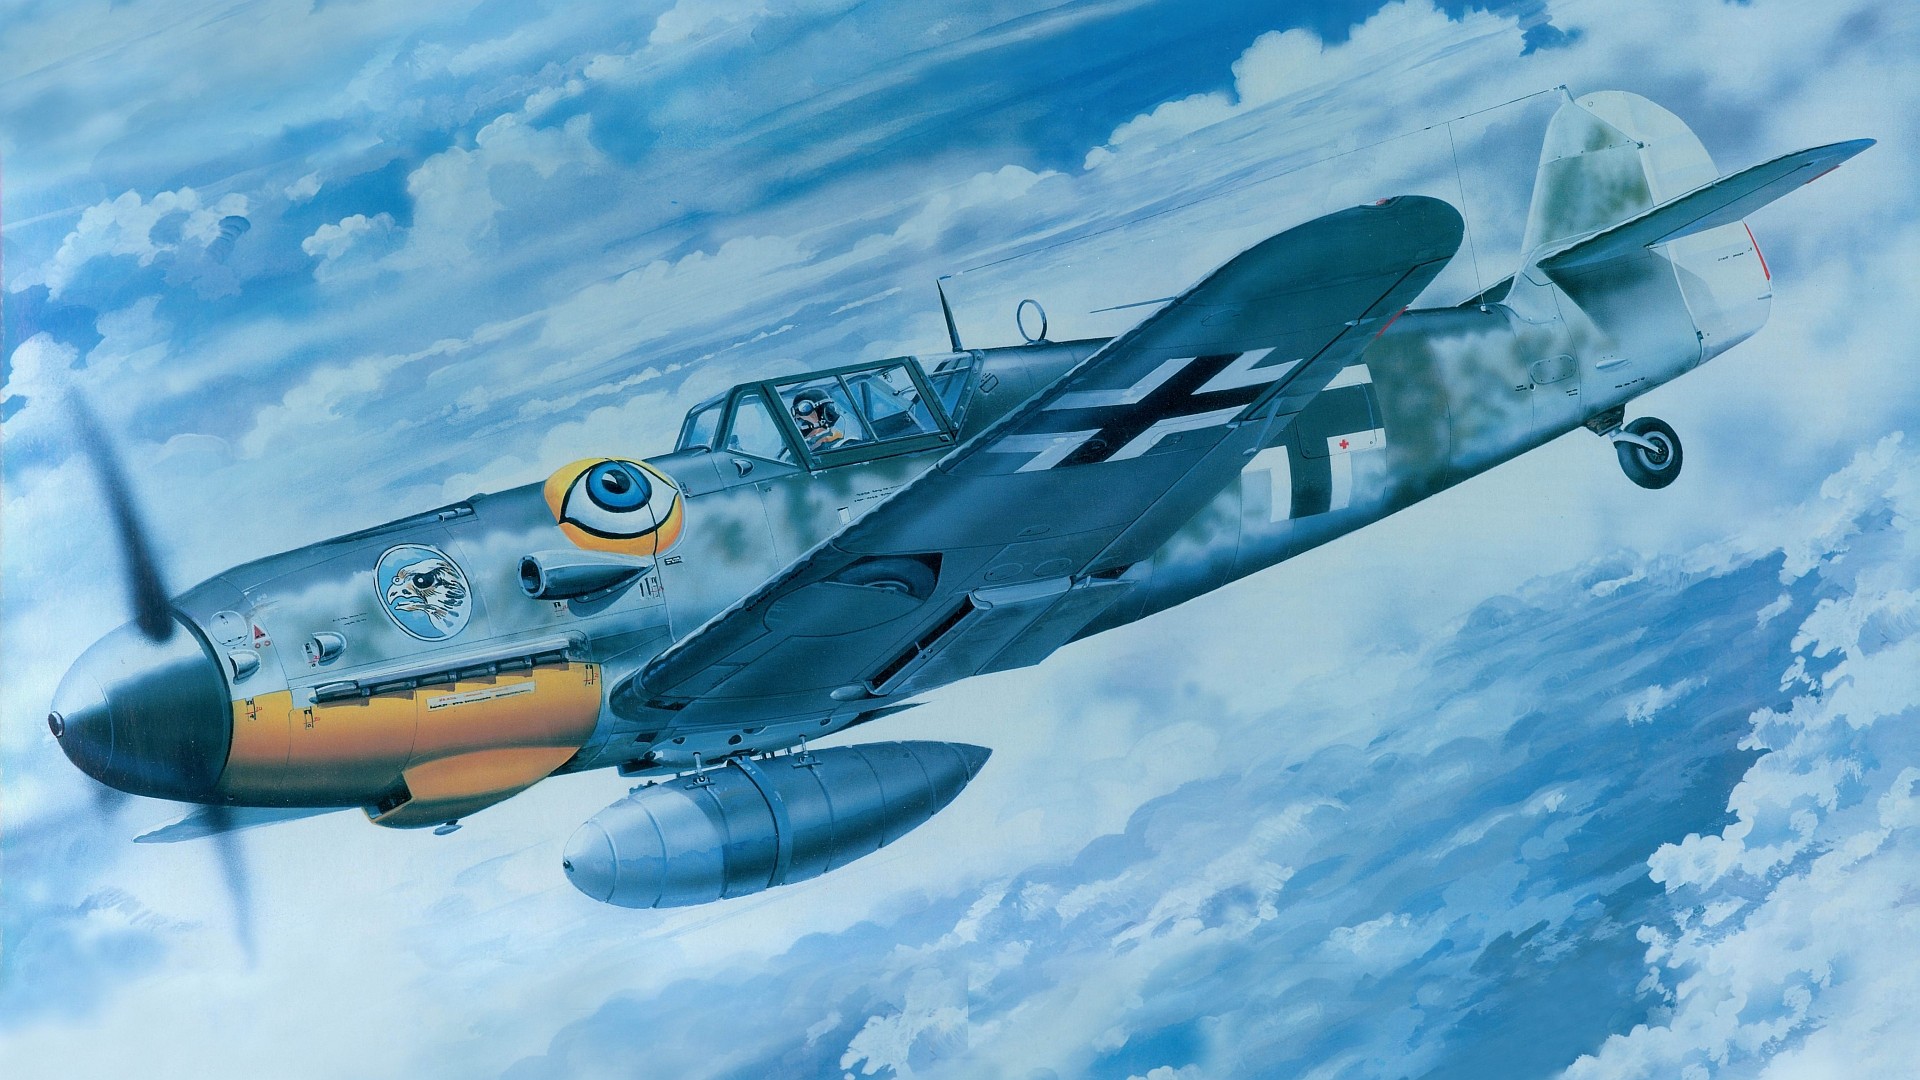 Messerschmitt, Messerschmitt Bf 109, Luftwaffe, Aircraft, Military